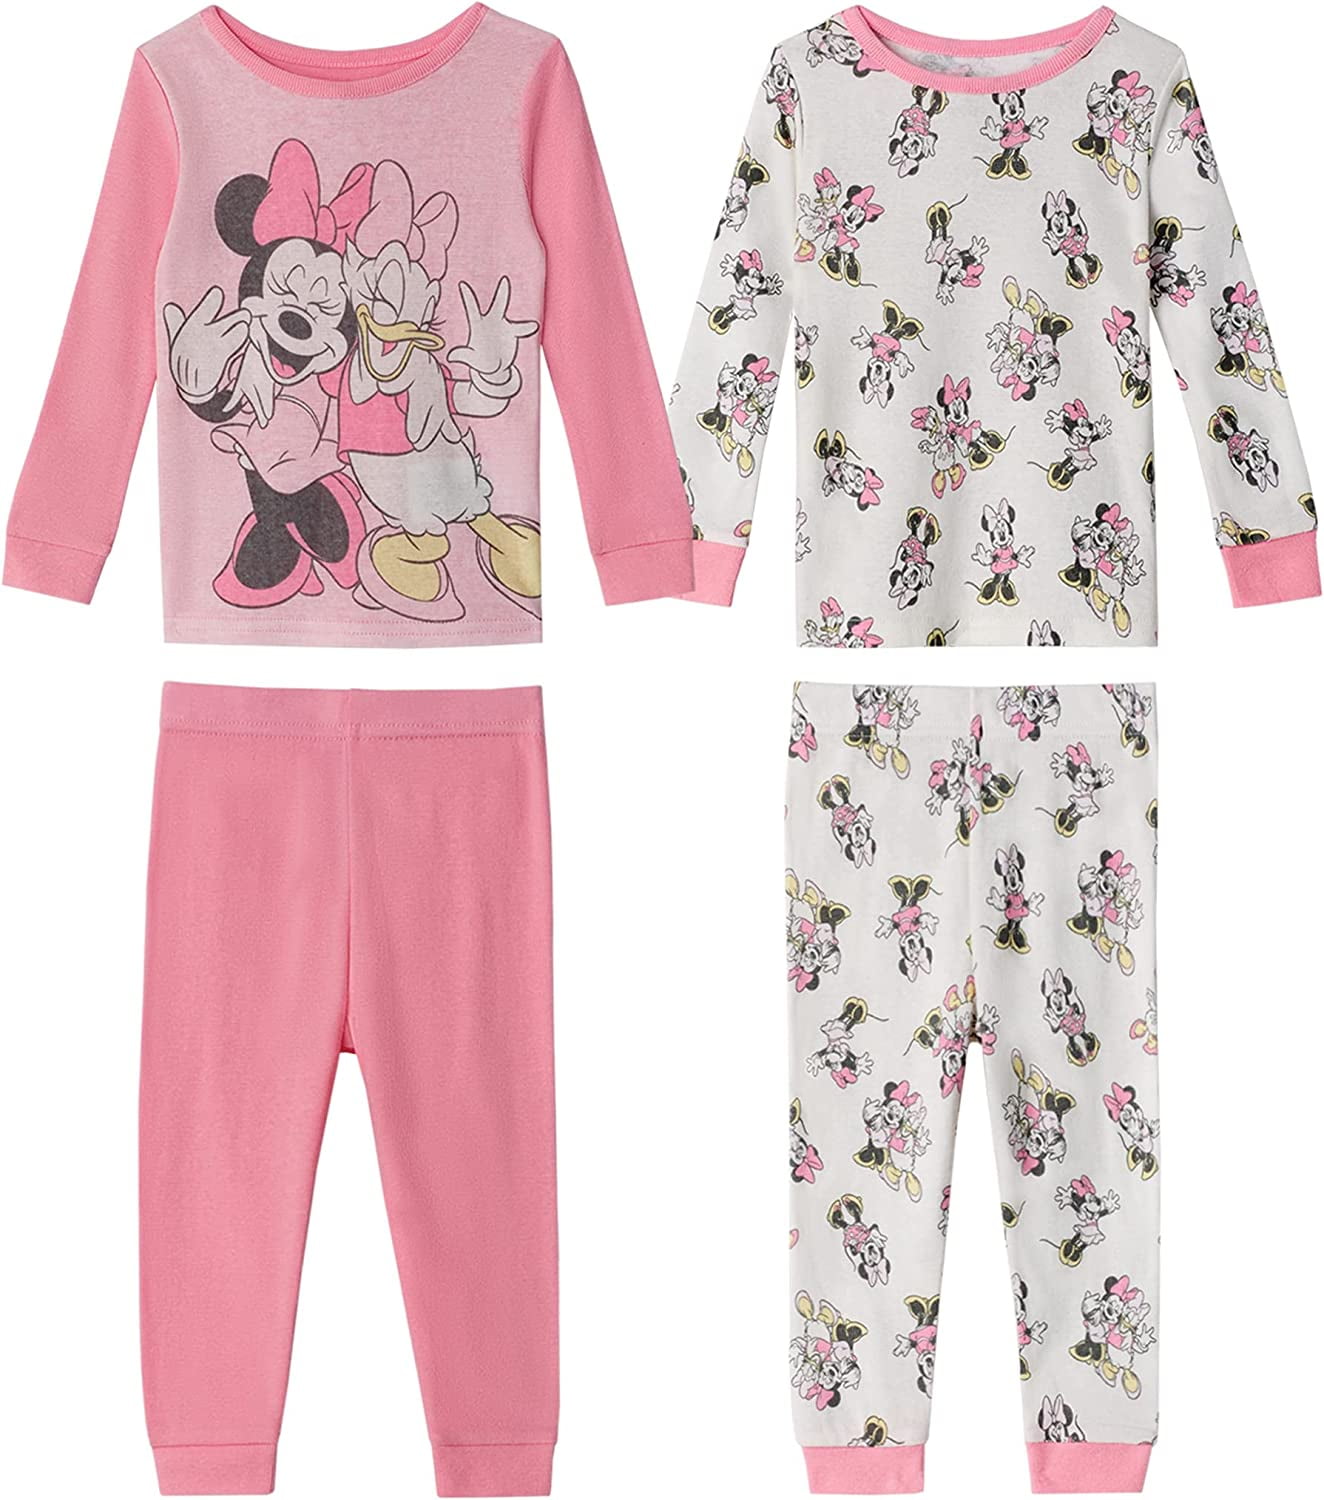 Pak om te zetten De andere dag bezoek Disney Baby Girls' Minnie Mouse Snug Fit Cotton Pajamas - Walmart.com